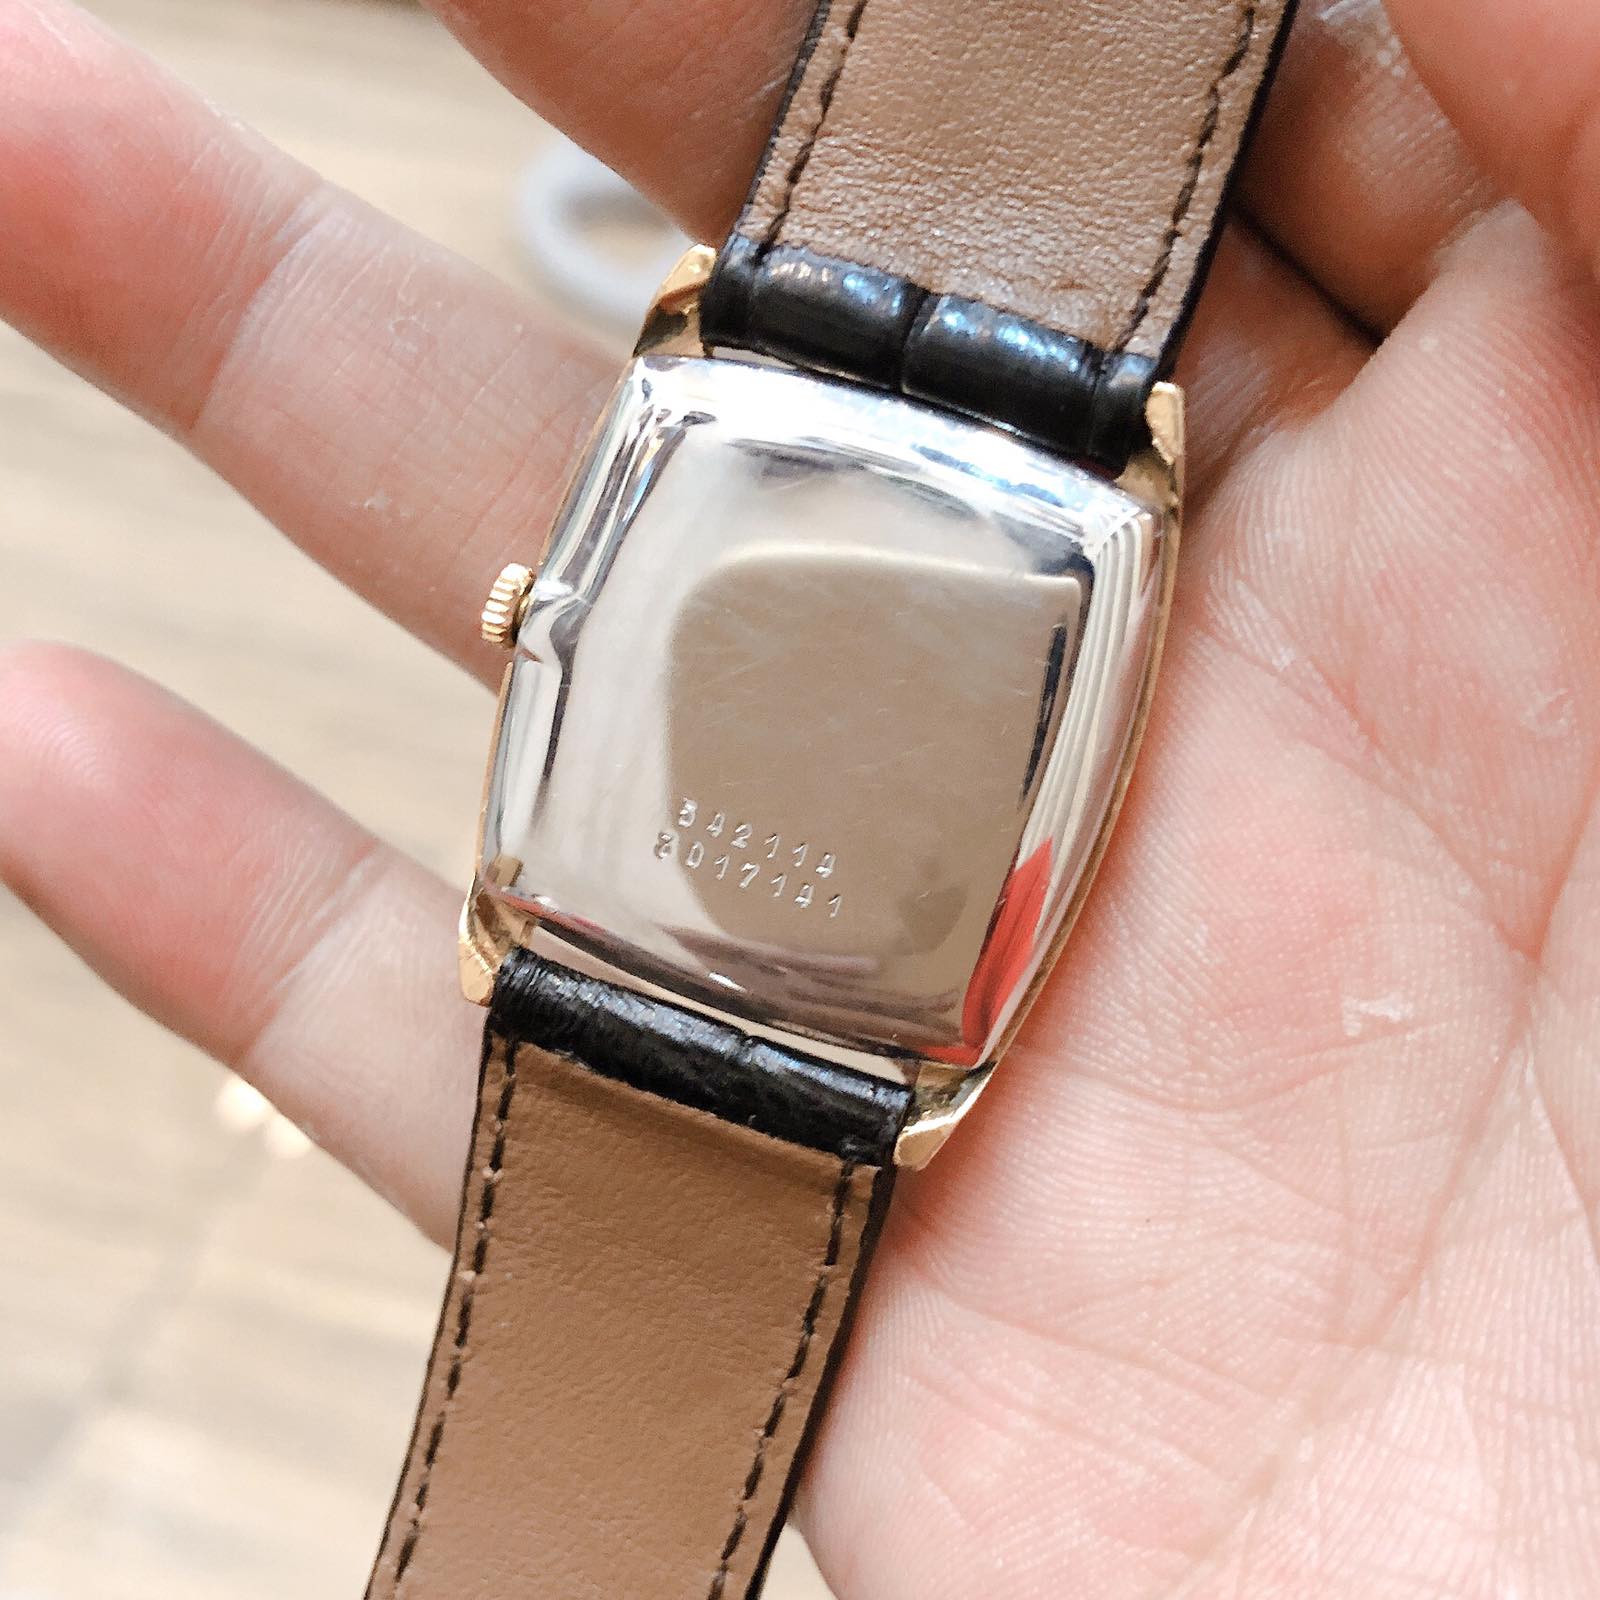 Đồng hồ cổ Universal lên dây lacke dành cho nữ chính hãng thuỵ sỹ